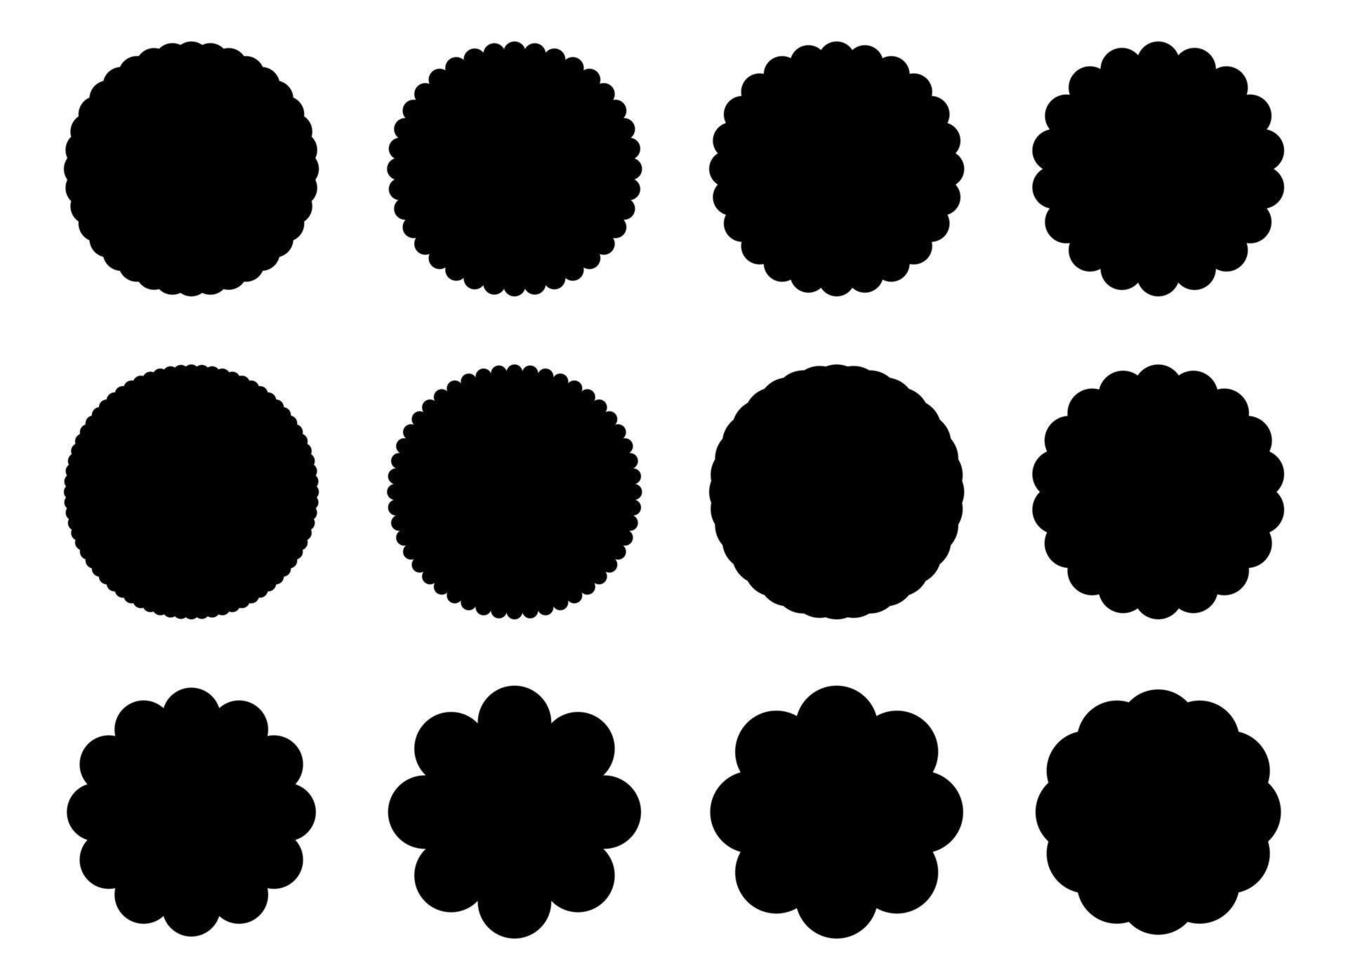 schwarze einfache Fahnenvektor-Designillustration lokalisiert auf weißem Hintergrund vektor